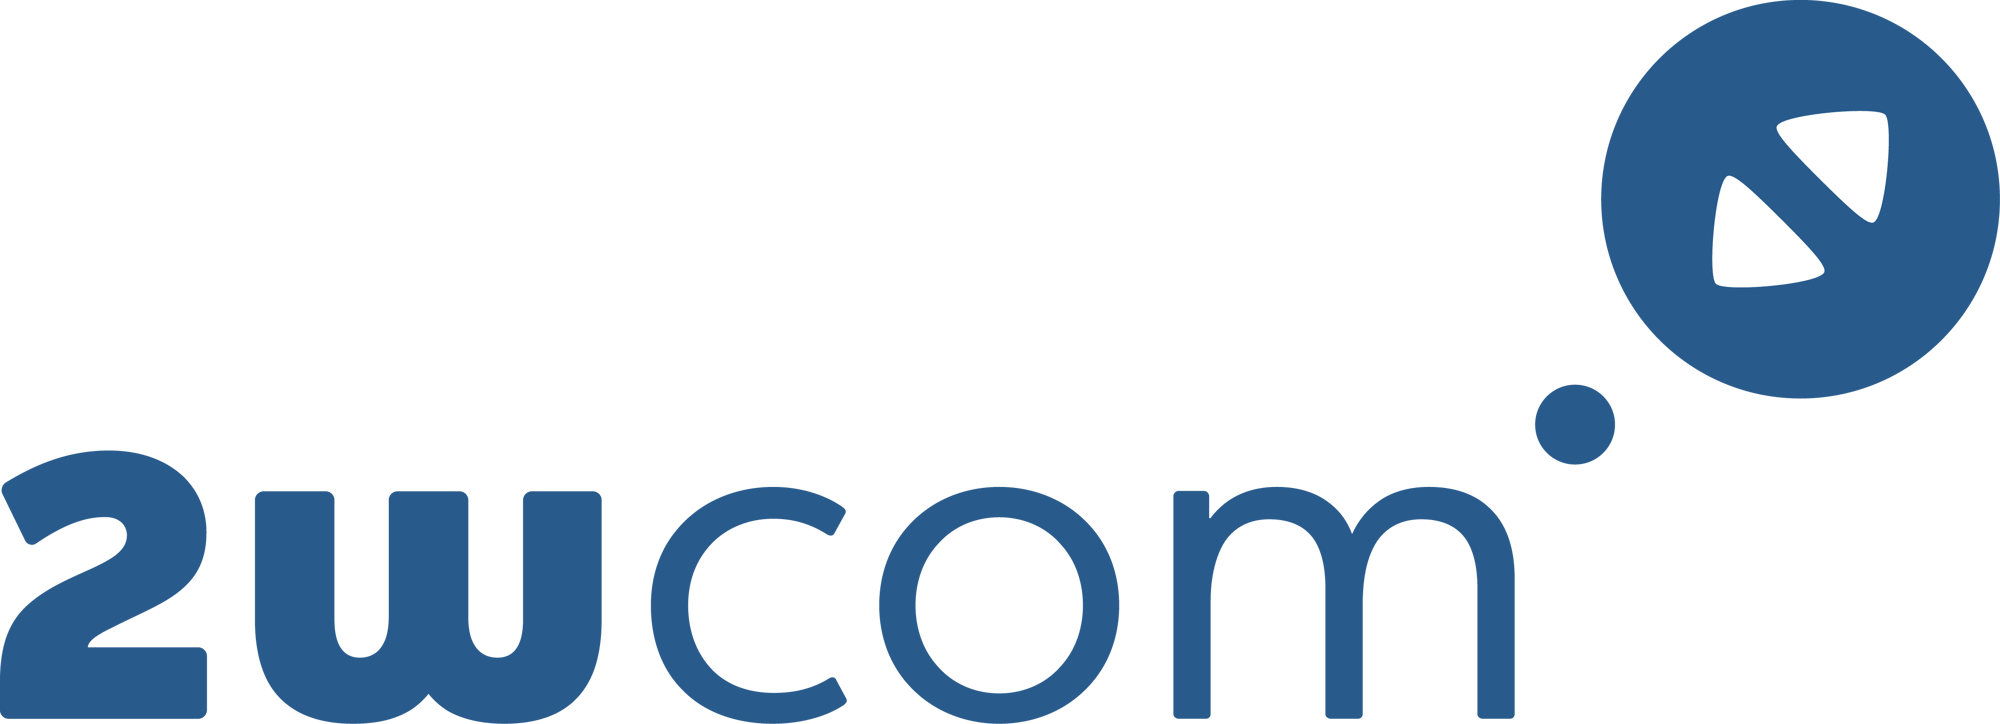 2wcom logo